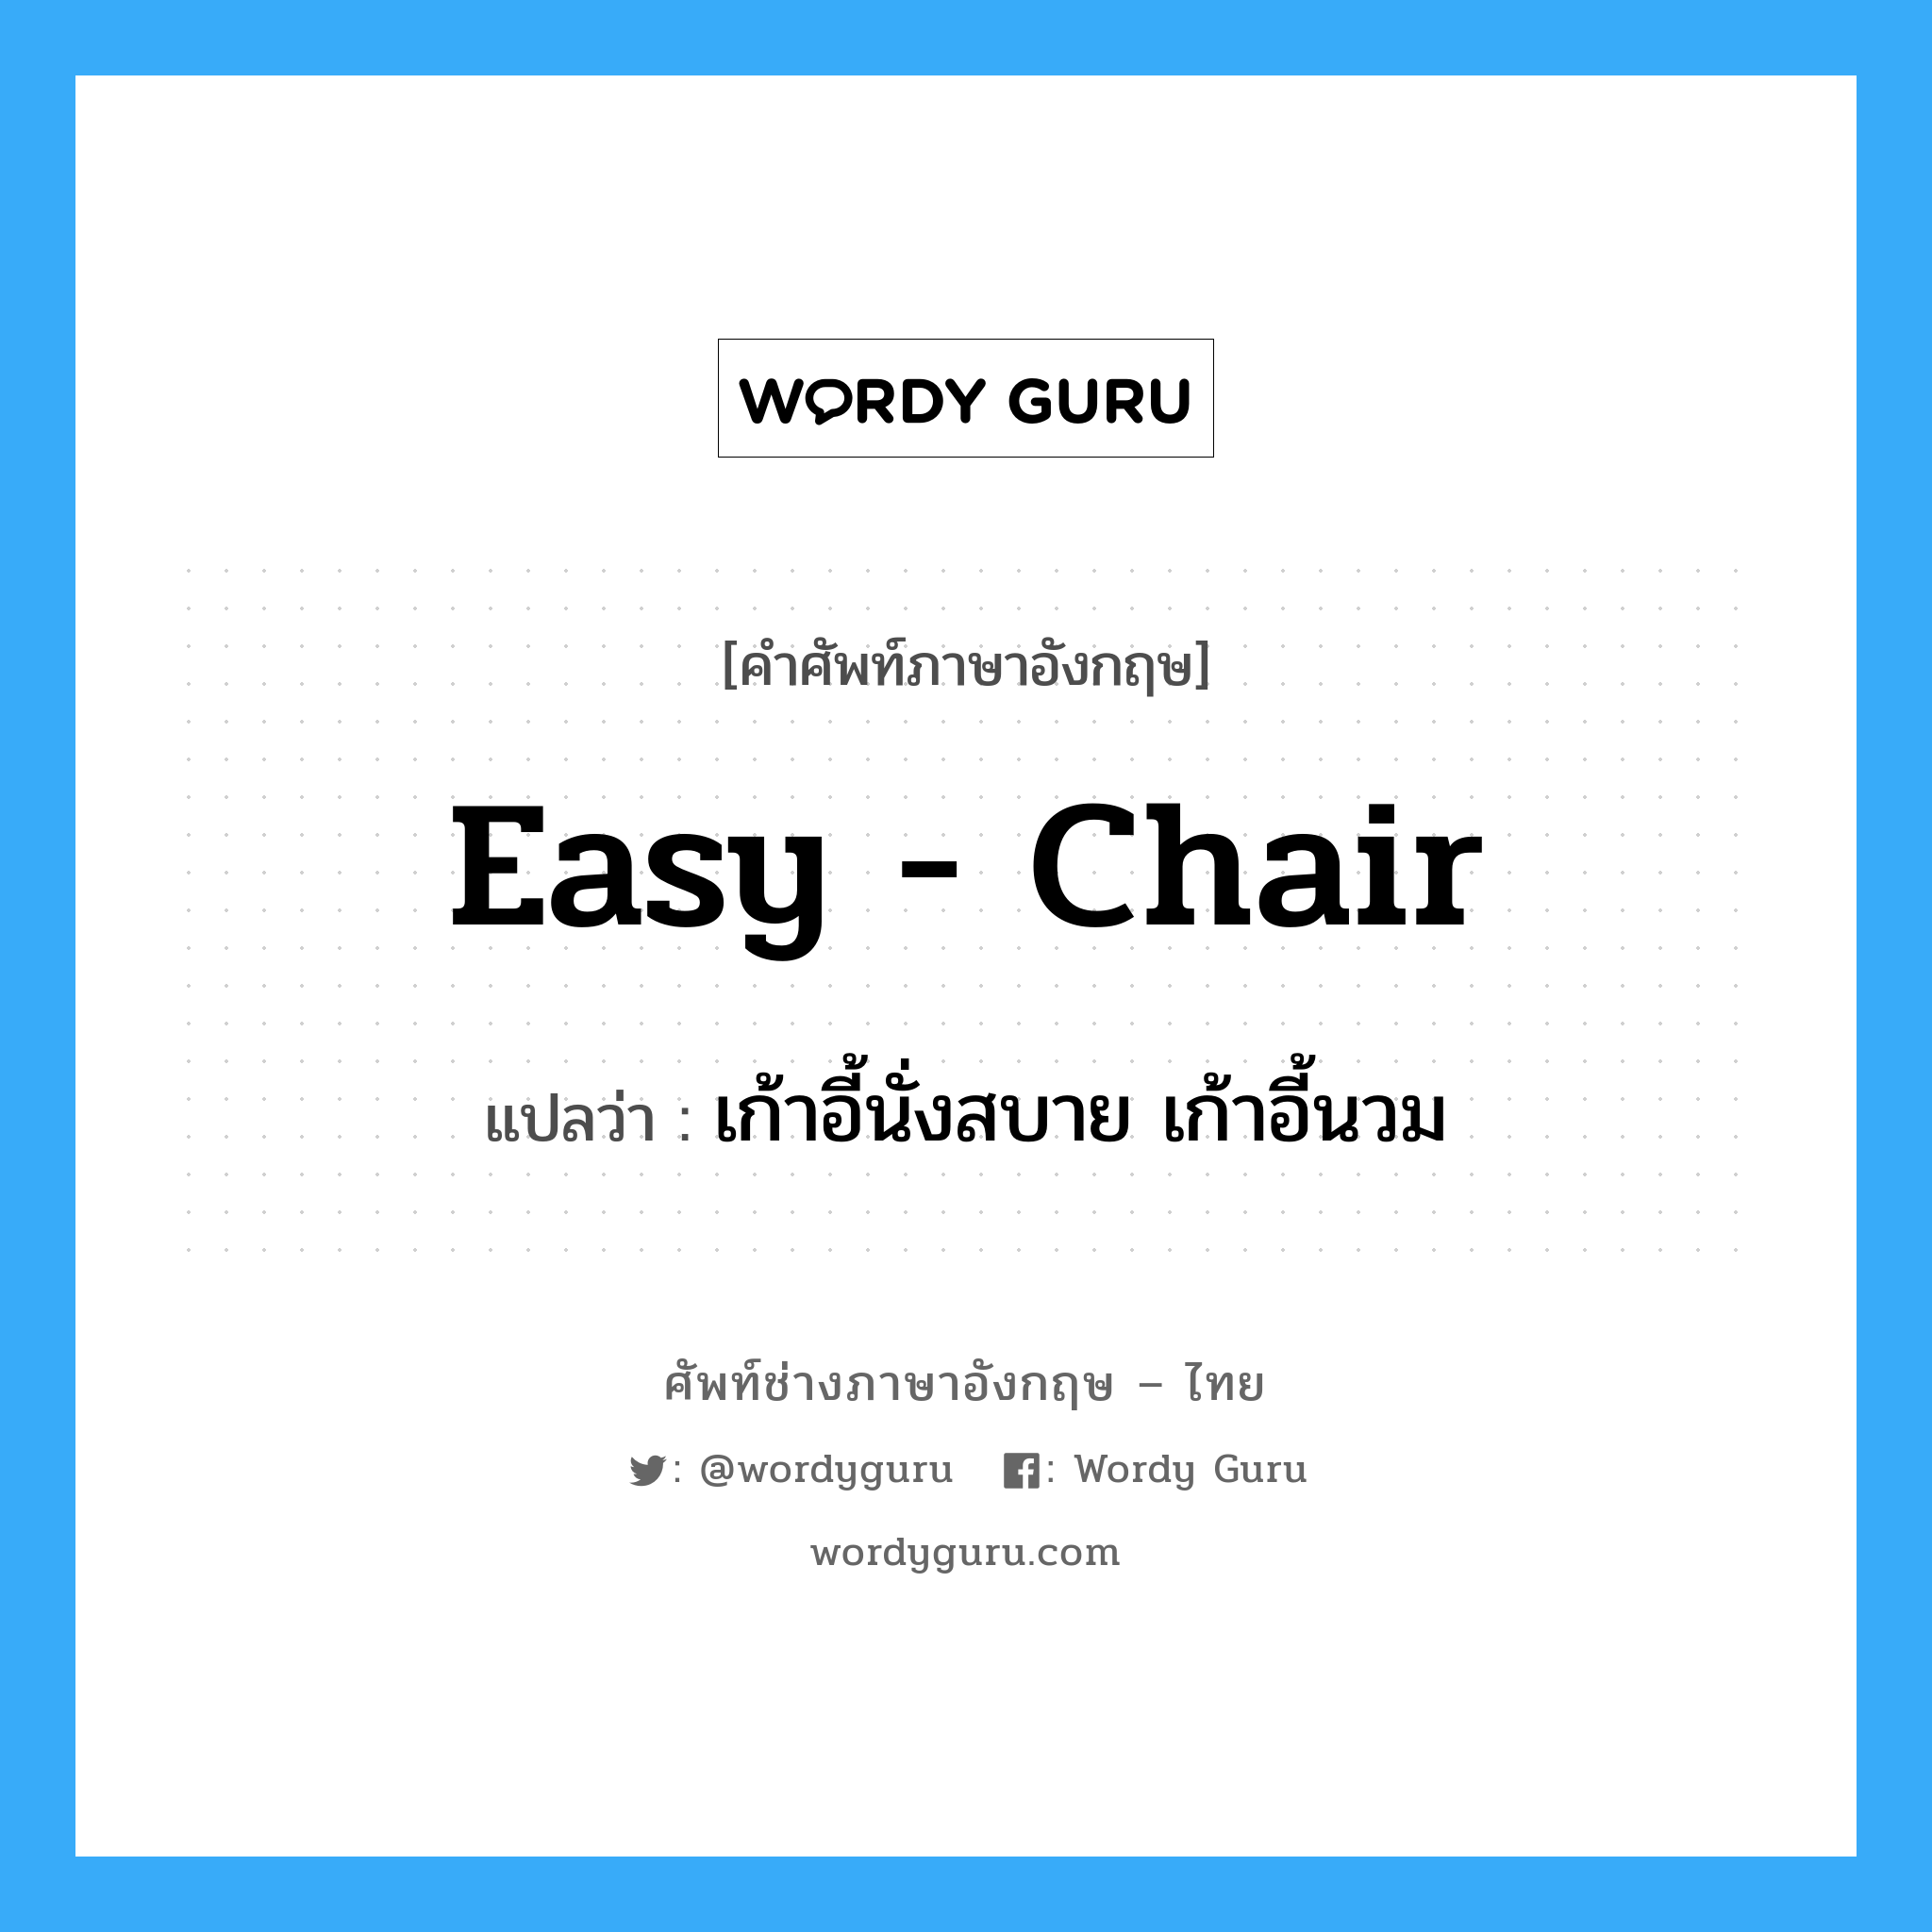 เก้าอี้นั่งสบาย เก้าอี้นวม ภาษาอังกฤษ?, คำศัพท์ช่างภาษาอังกฤษ - ไทย เก้าอี้นั่งสบาย เก้าอี้นวม คำศัพท์ภาษาอังกฤษ เก้าอี้นั่งสบาย เก้าอี้นวม แปลว่า easy - chair